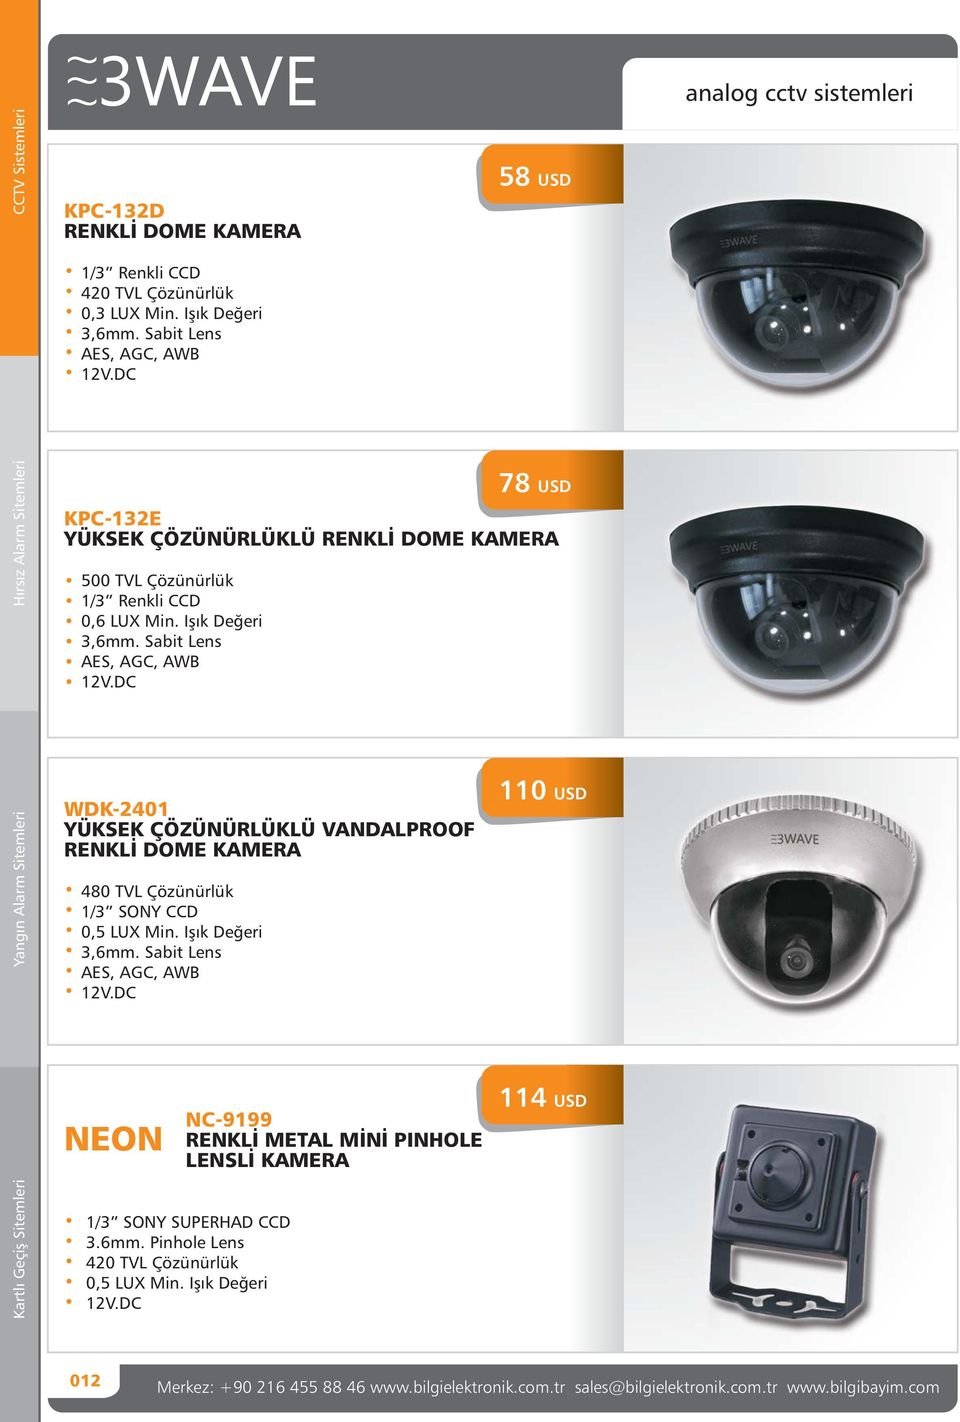 Sabit Lens AES, AGC, AWB WDK-2401 YÜKSEK ÇÖZÜNÜRLÜKLÜ VANDALPROOF RENKLİ DOME KAMERA 480 TVL Çözünürlük 1/3 SONY CCD 0,5 LUX Min. Işık Değeri 3,6mm.